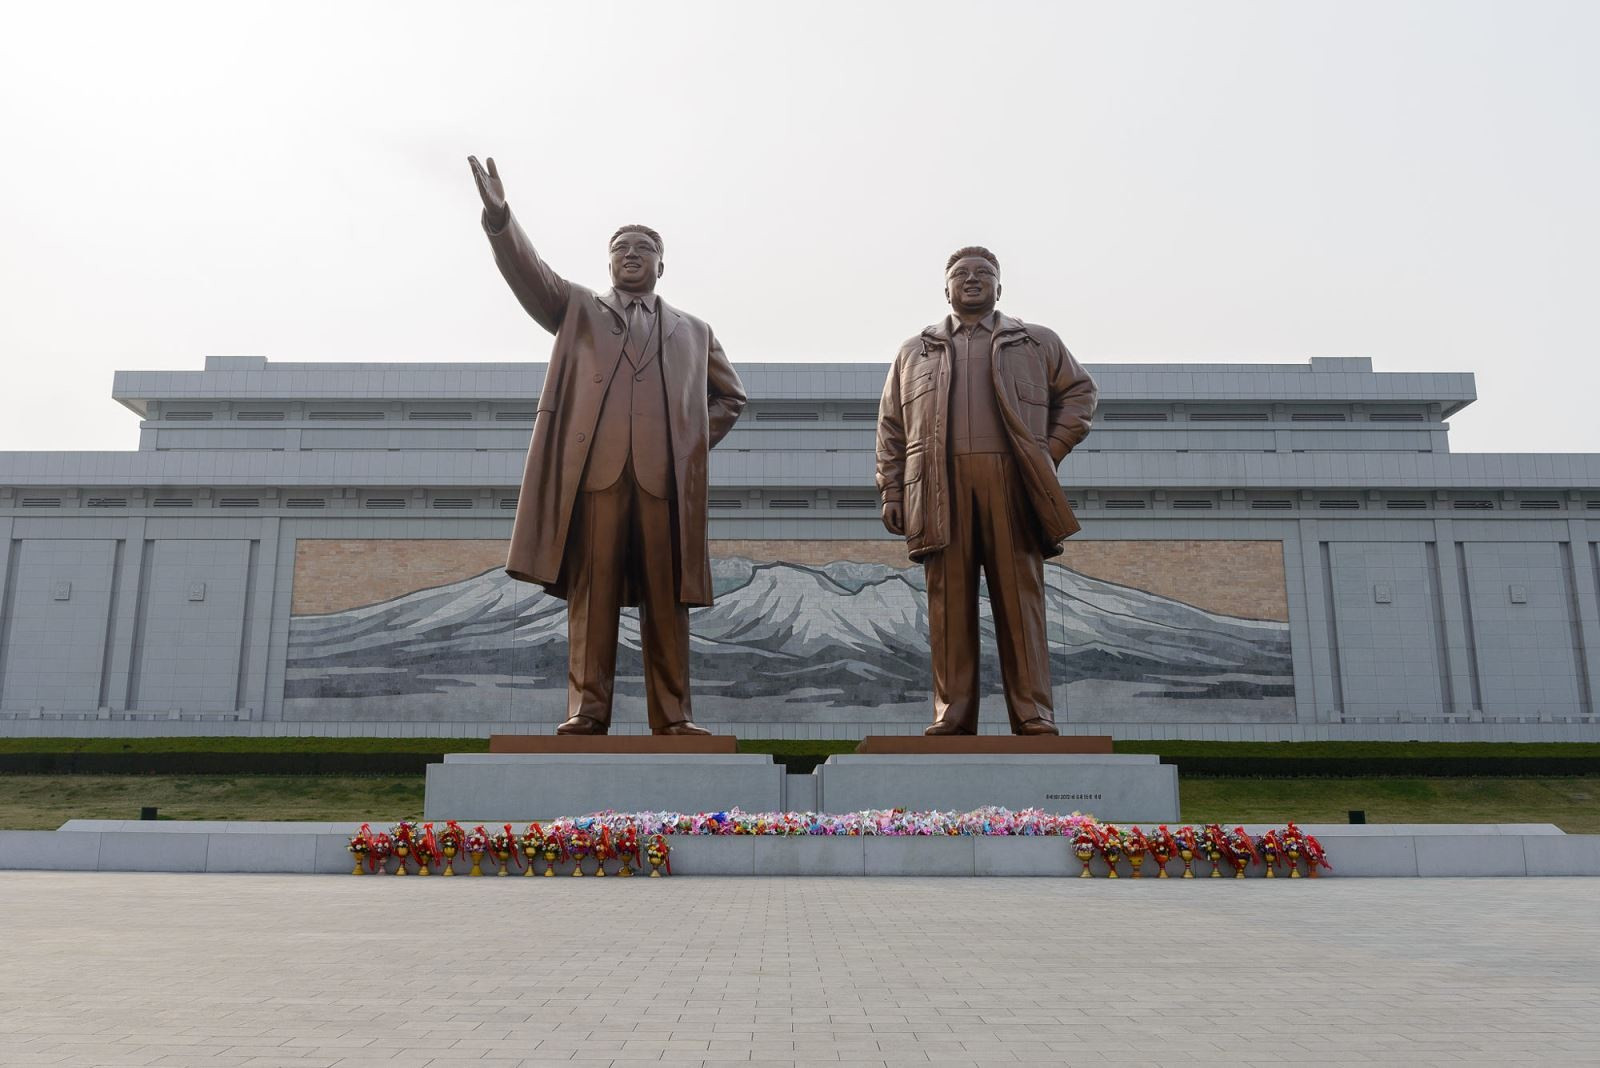 Đài tưởng niệm Mansudae, nơi đặt hai bức tượng đồng đồ sộ của 2 cố lãnh đạo Triều Tiên Kim Il Sun và Kim Jong Il, ông nội và cha của nhà lãnh đạo Triều Tiên Kim Jong Un.